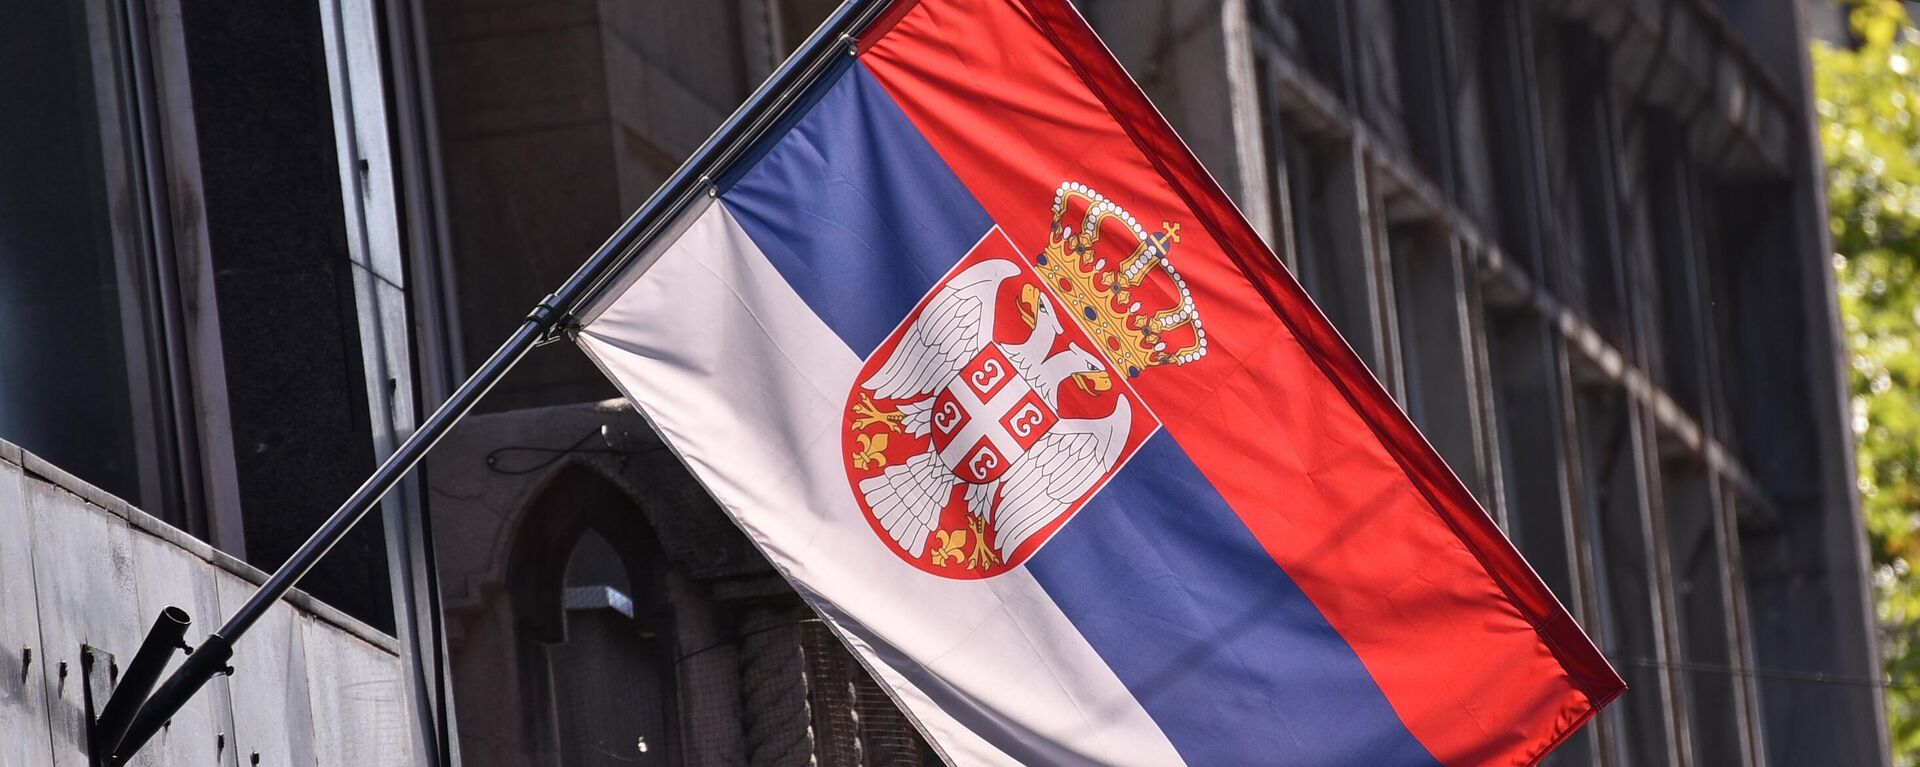 Србија осванула у бојама српске заставе - Sputnik Србија, 1920, 24.10.2021